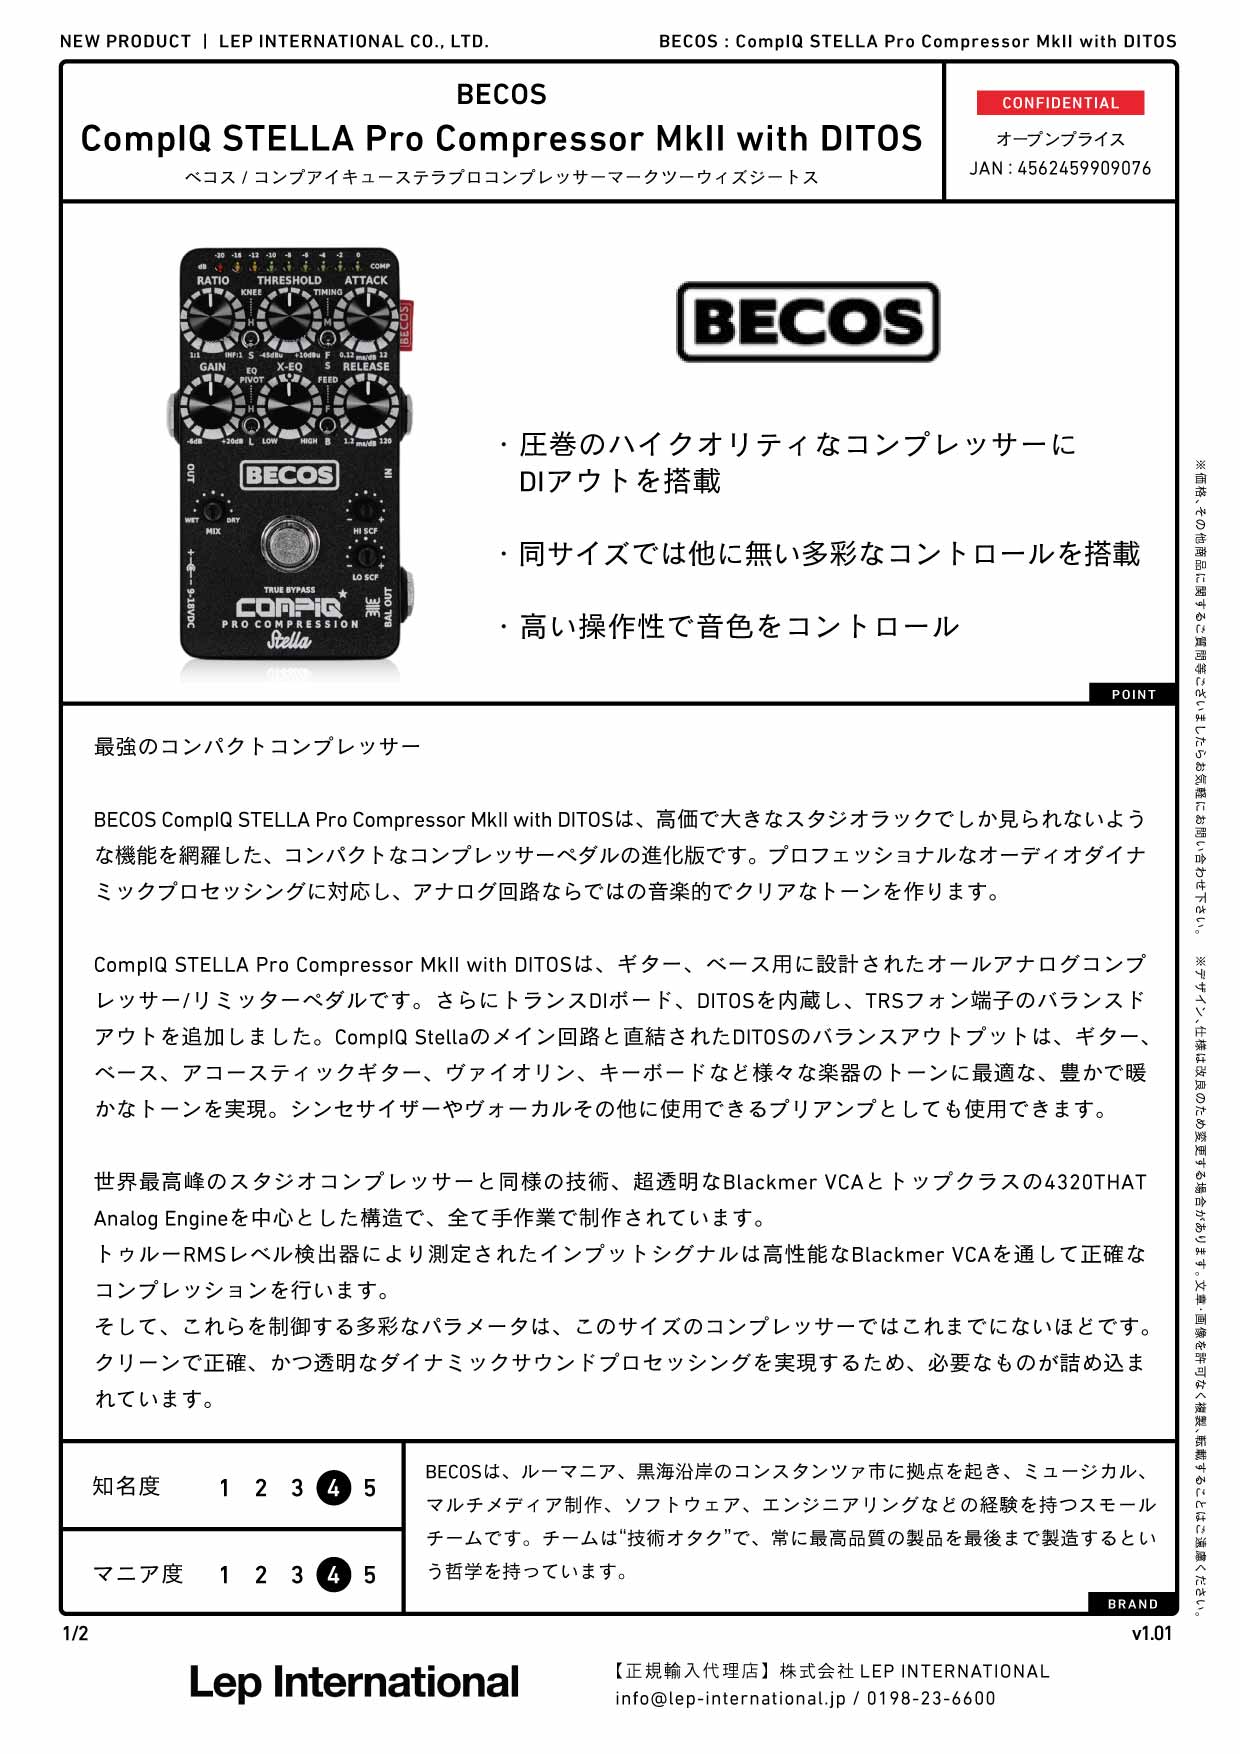 BECOS / CompIQ STELLA Pro Compressor MkII with DITOS